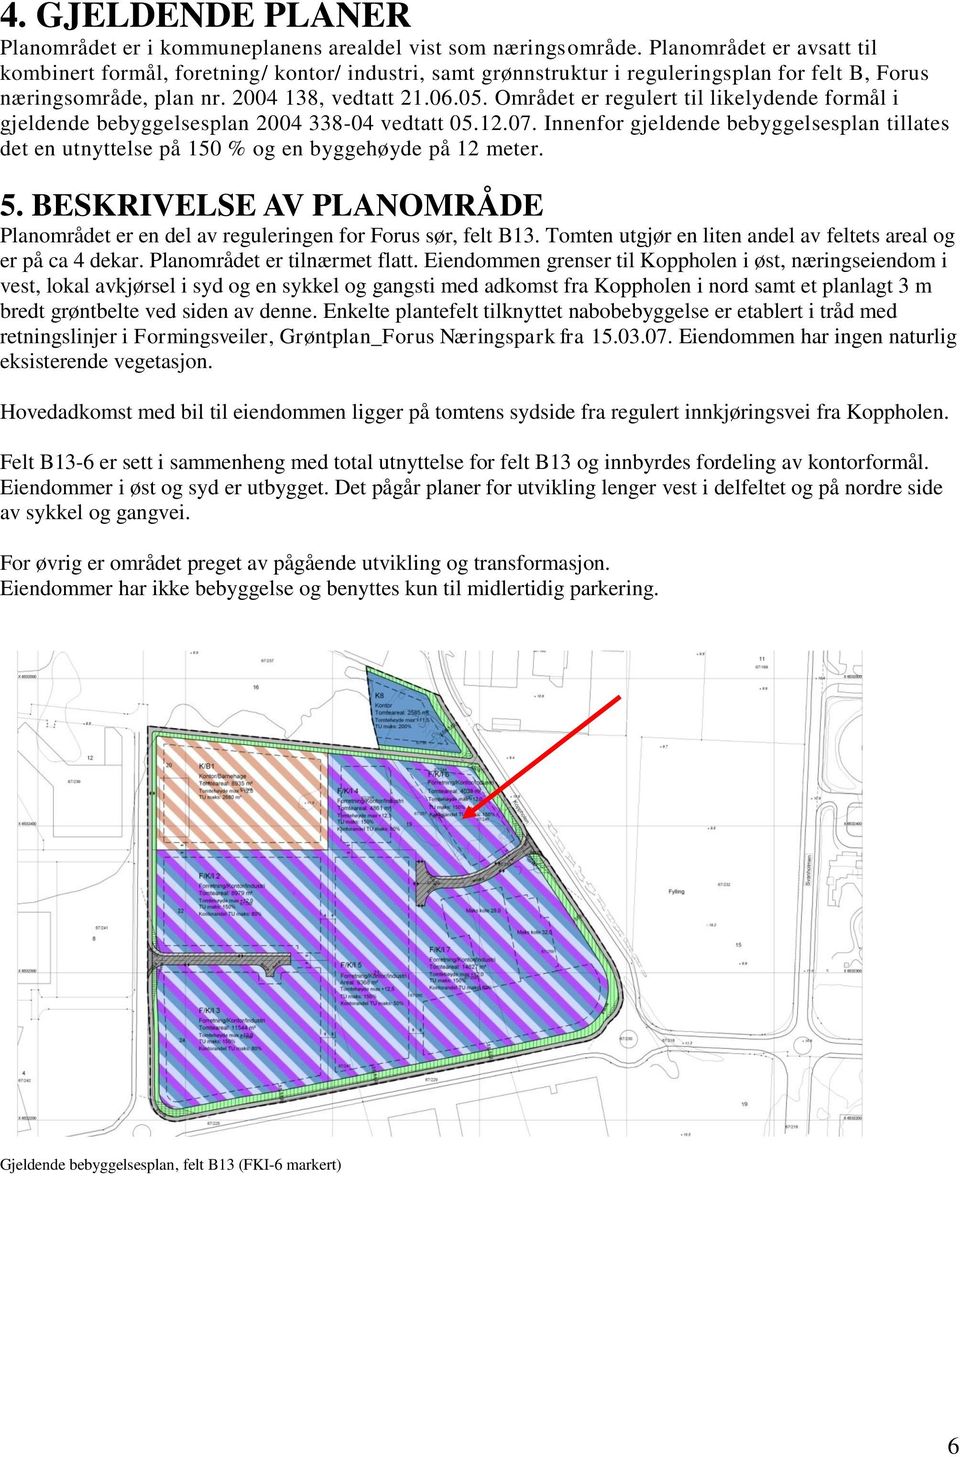 Området er regulert til likelydende formål i gjeldende bebyggelsesplan 2004 338-04 vedtatt 05.12.07.